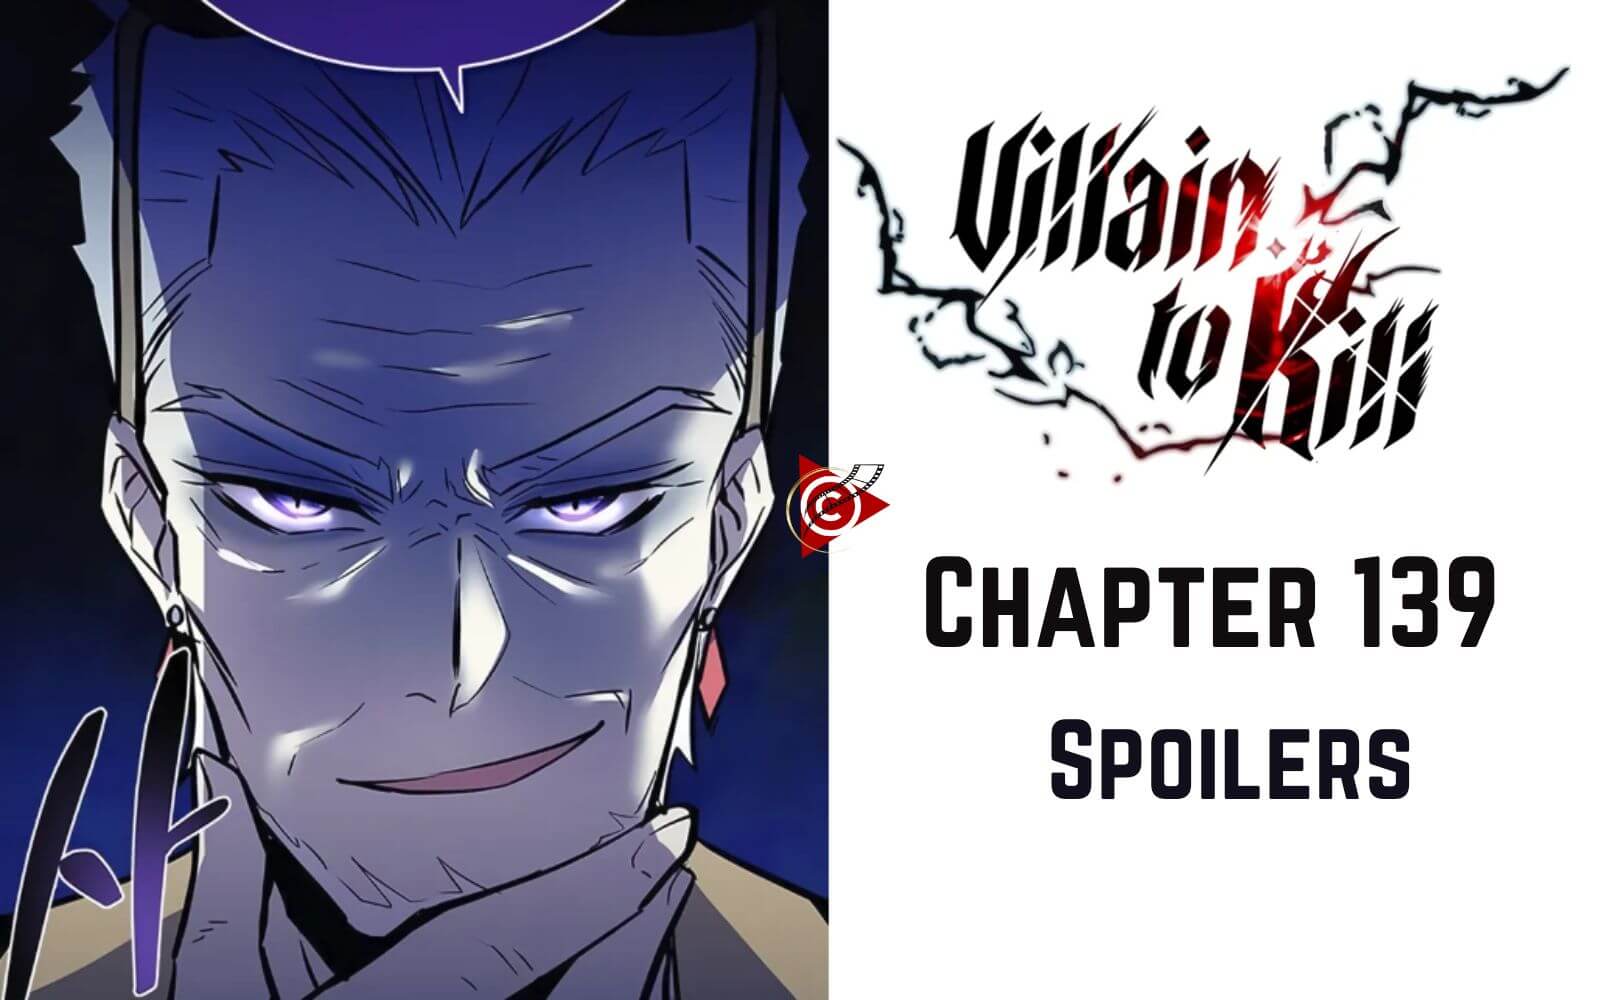 Villain To Kill Chapter 139 Spoiler Alert